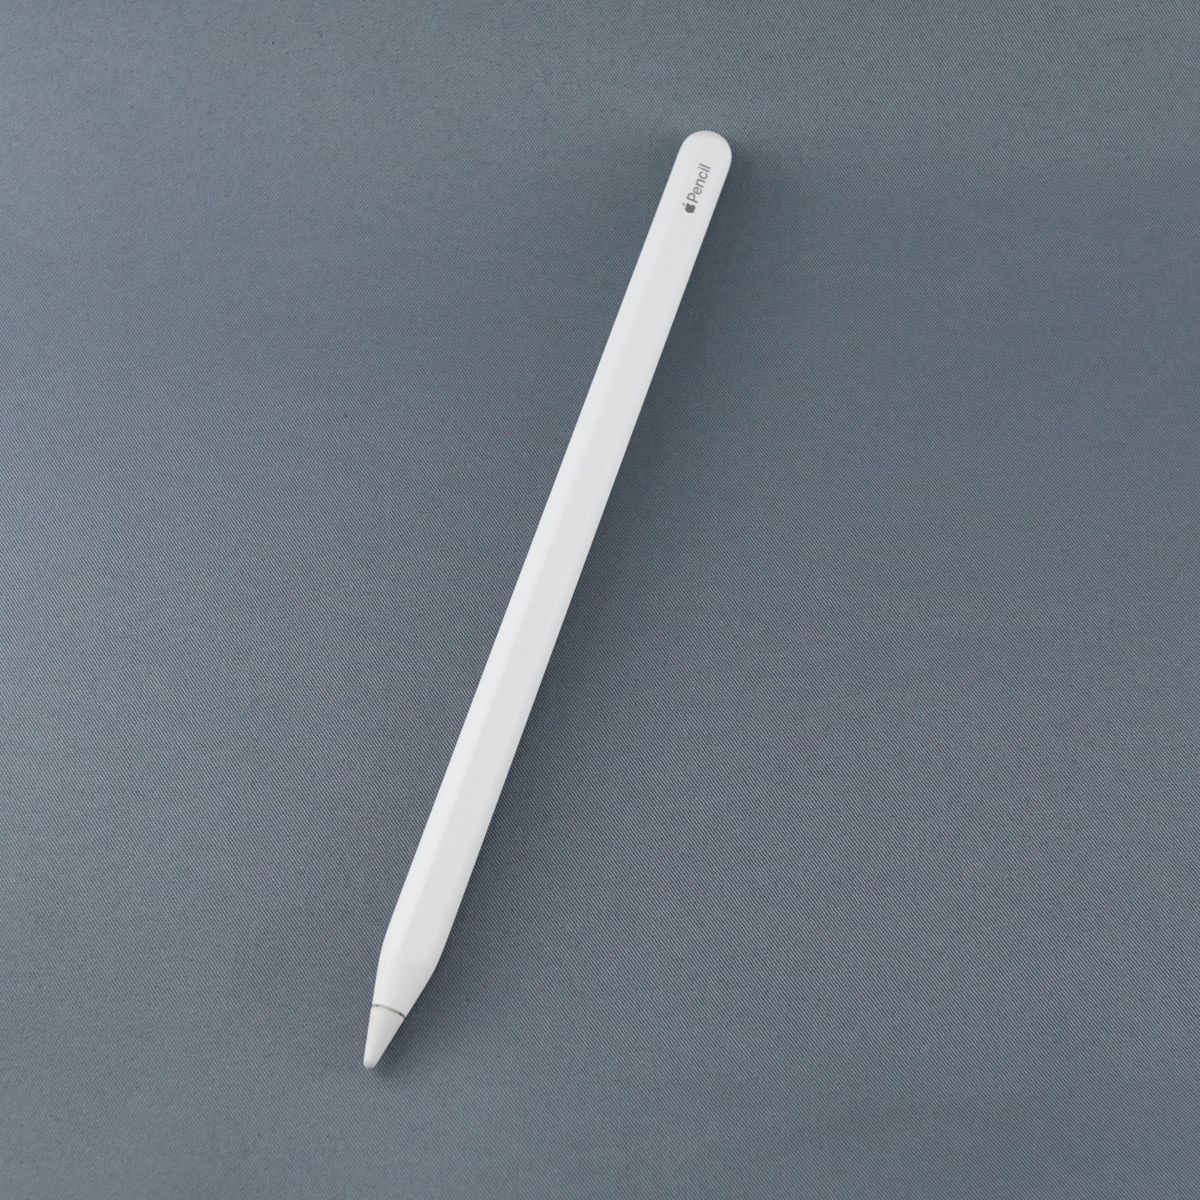 Apple Pencil 第2世代 MU8F2J/A 美品PC/タブレット